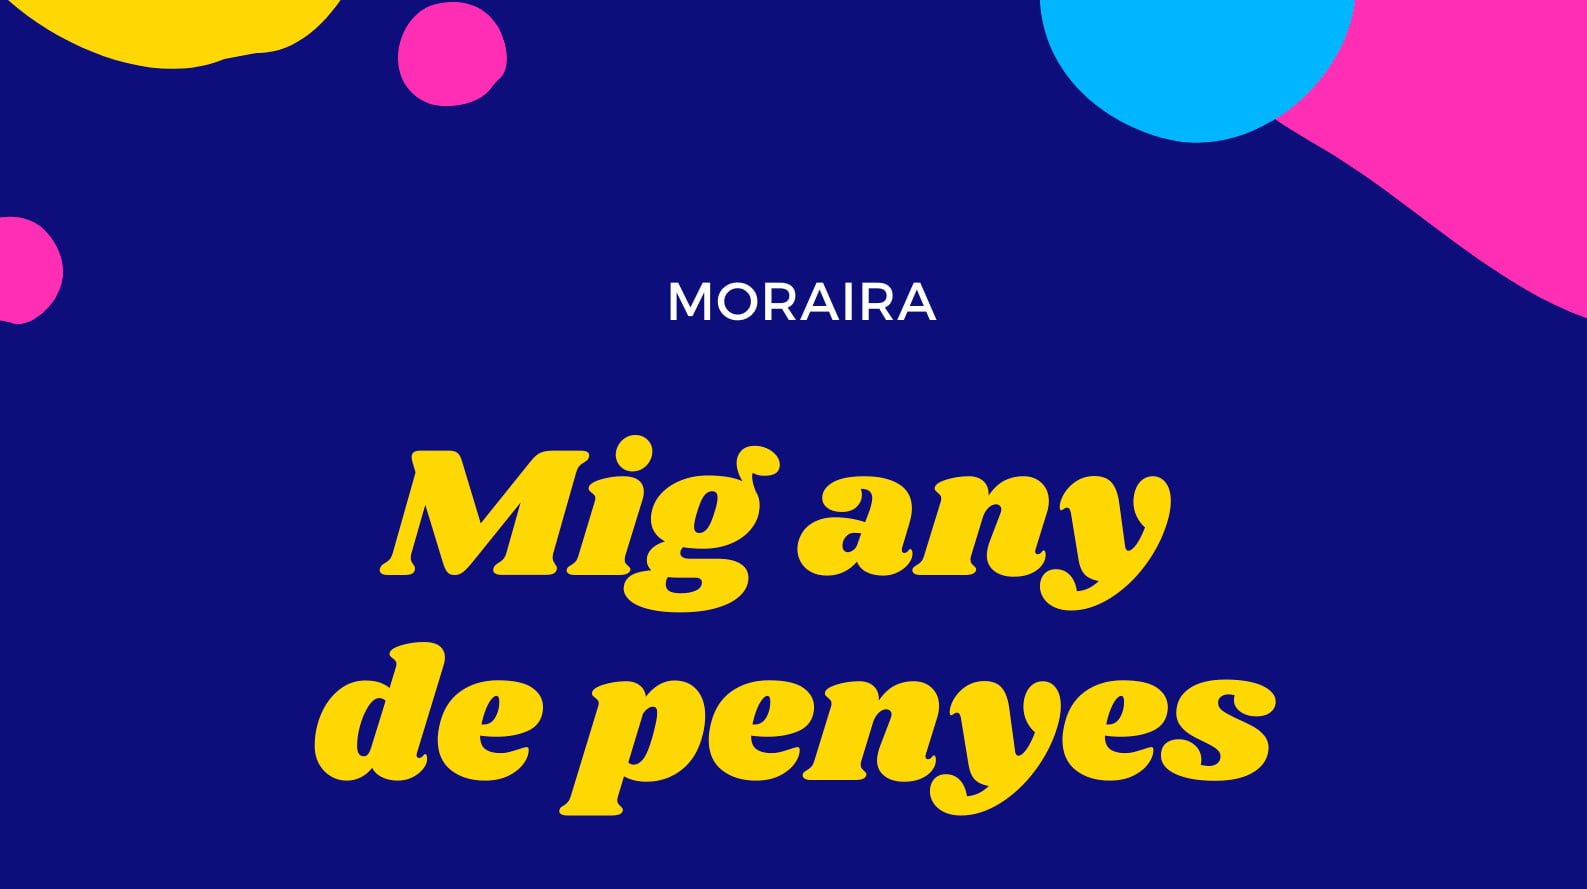 Mig Any Penyes Moraira 2021